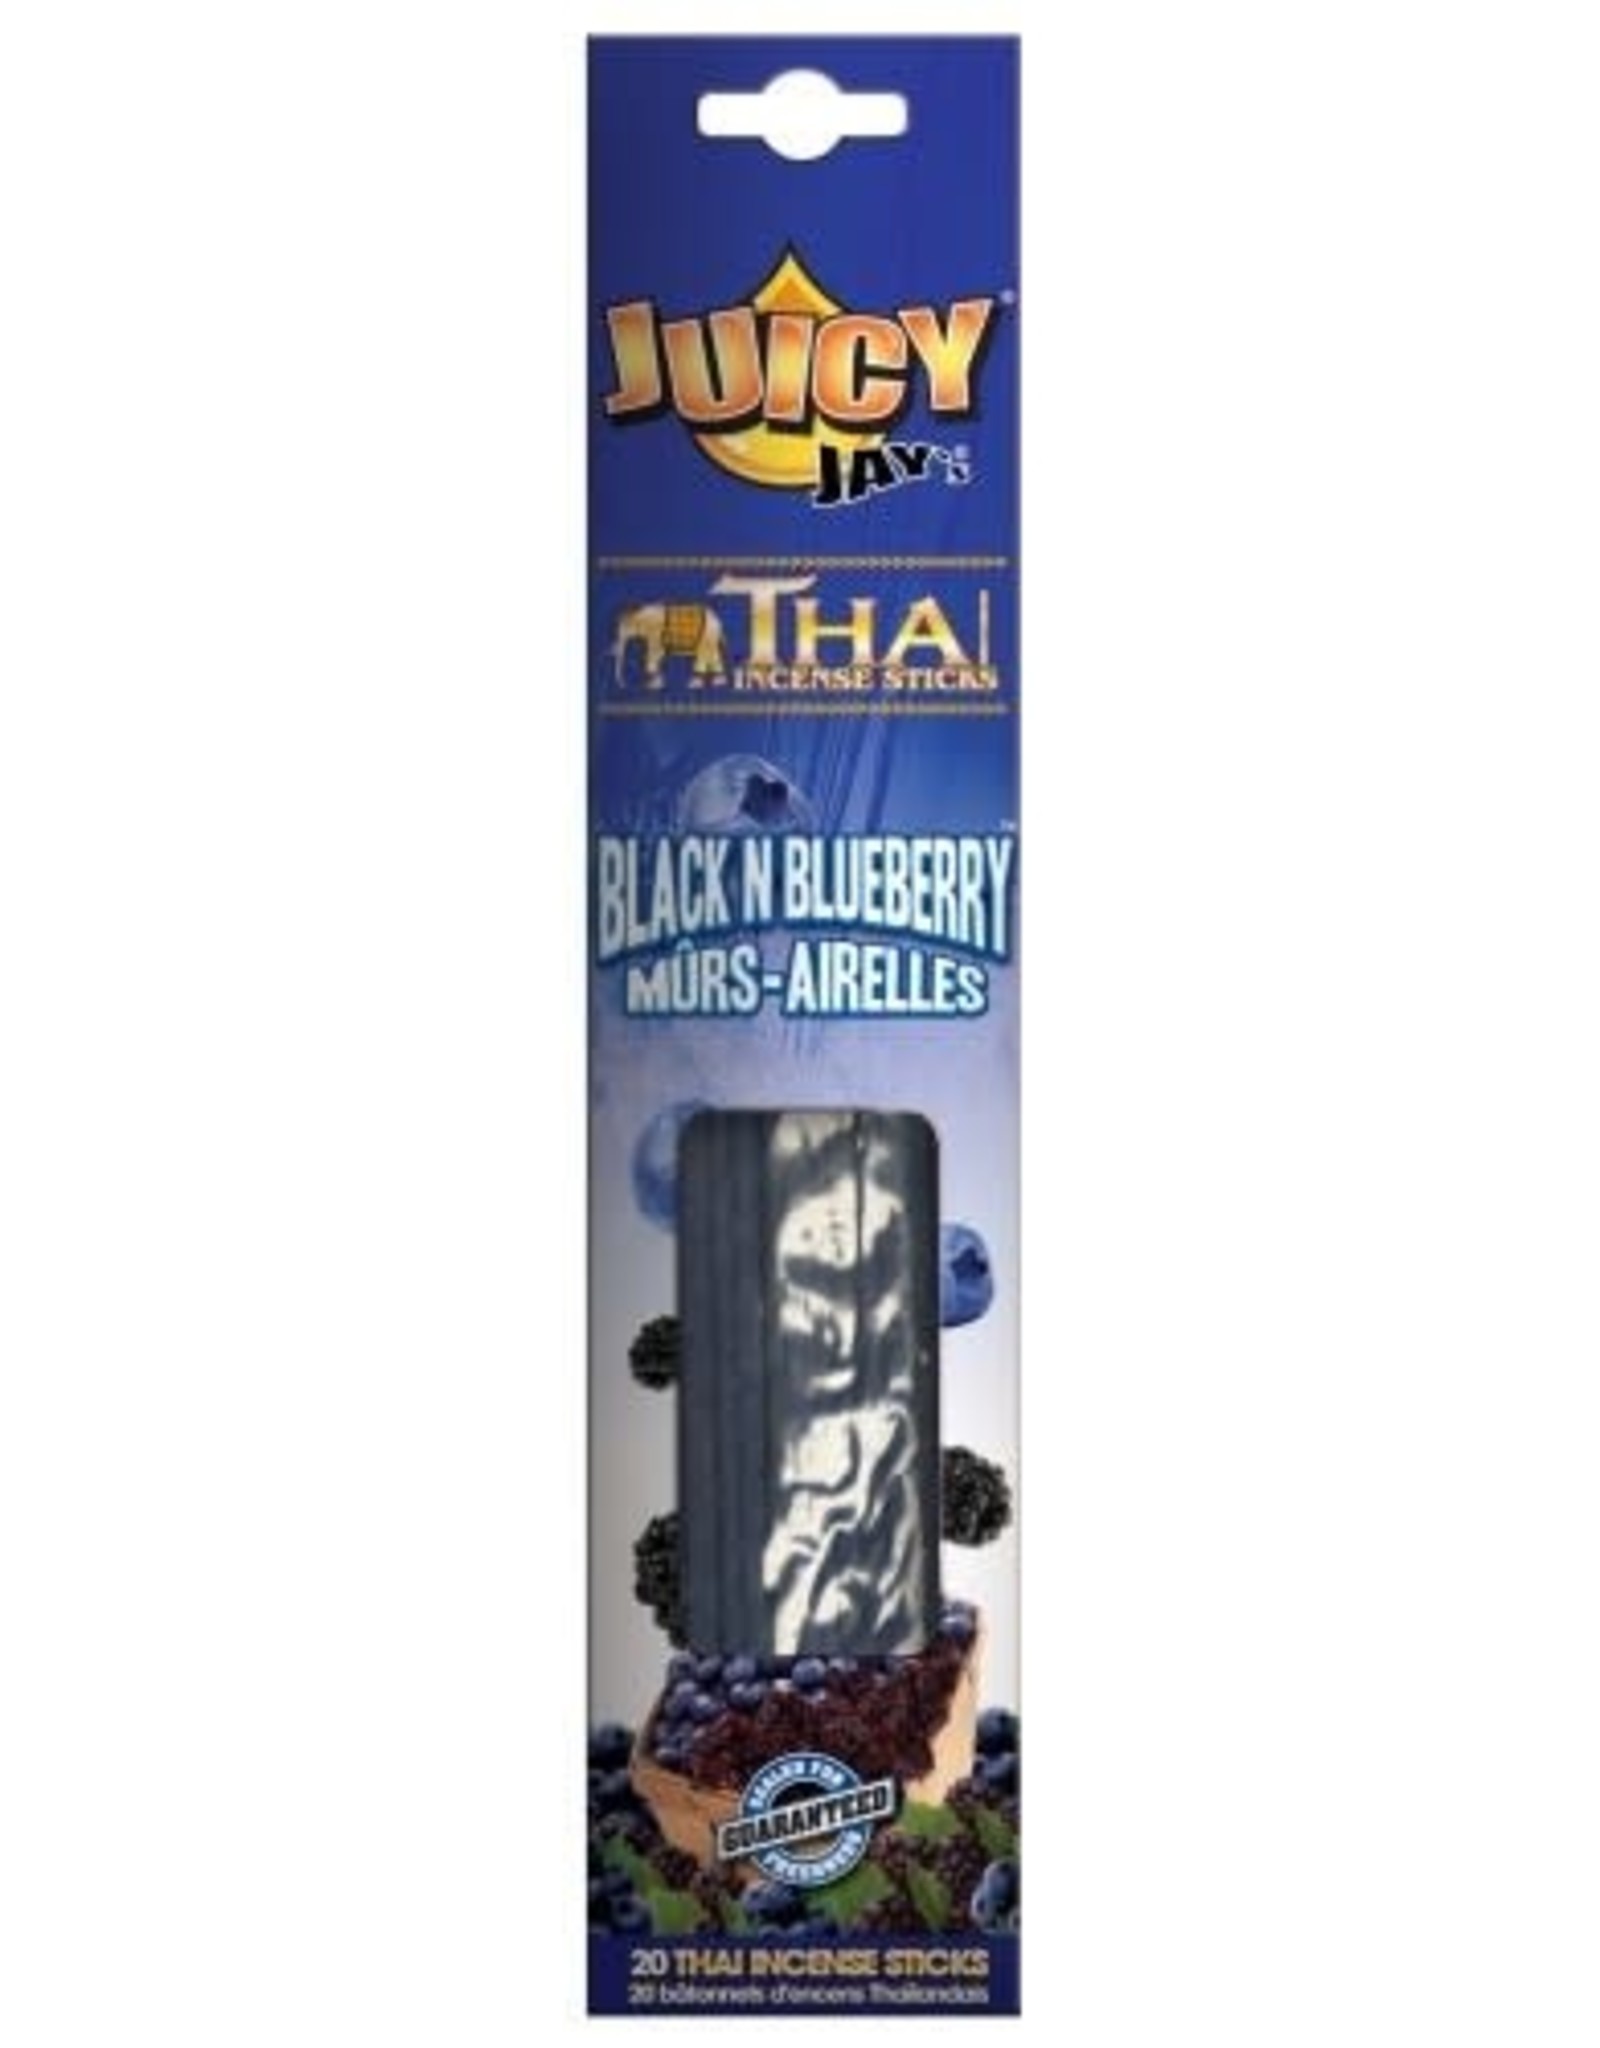 Juicy Jay's Juicy Incense - Black N Blueberry